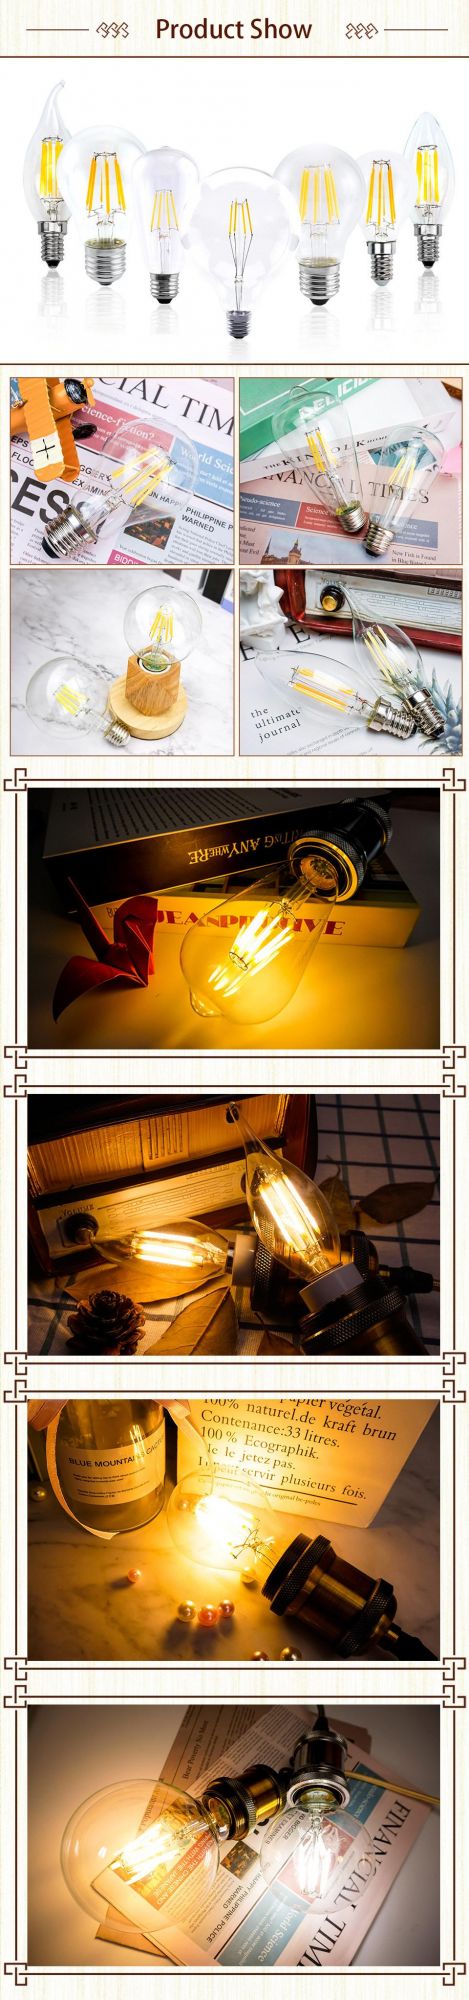 LED Candle Bulb C35 G45 St64 Vintage Lamp E14 LED E27 A60 G95 G125 220V LED Globe 2W 4W 6W 8W Filament Edison LED Light Bulbs